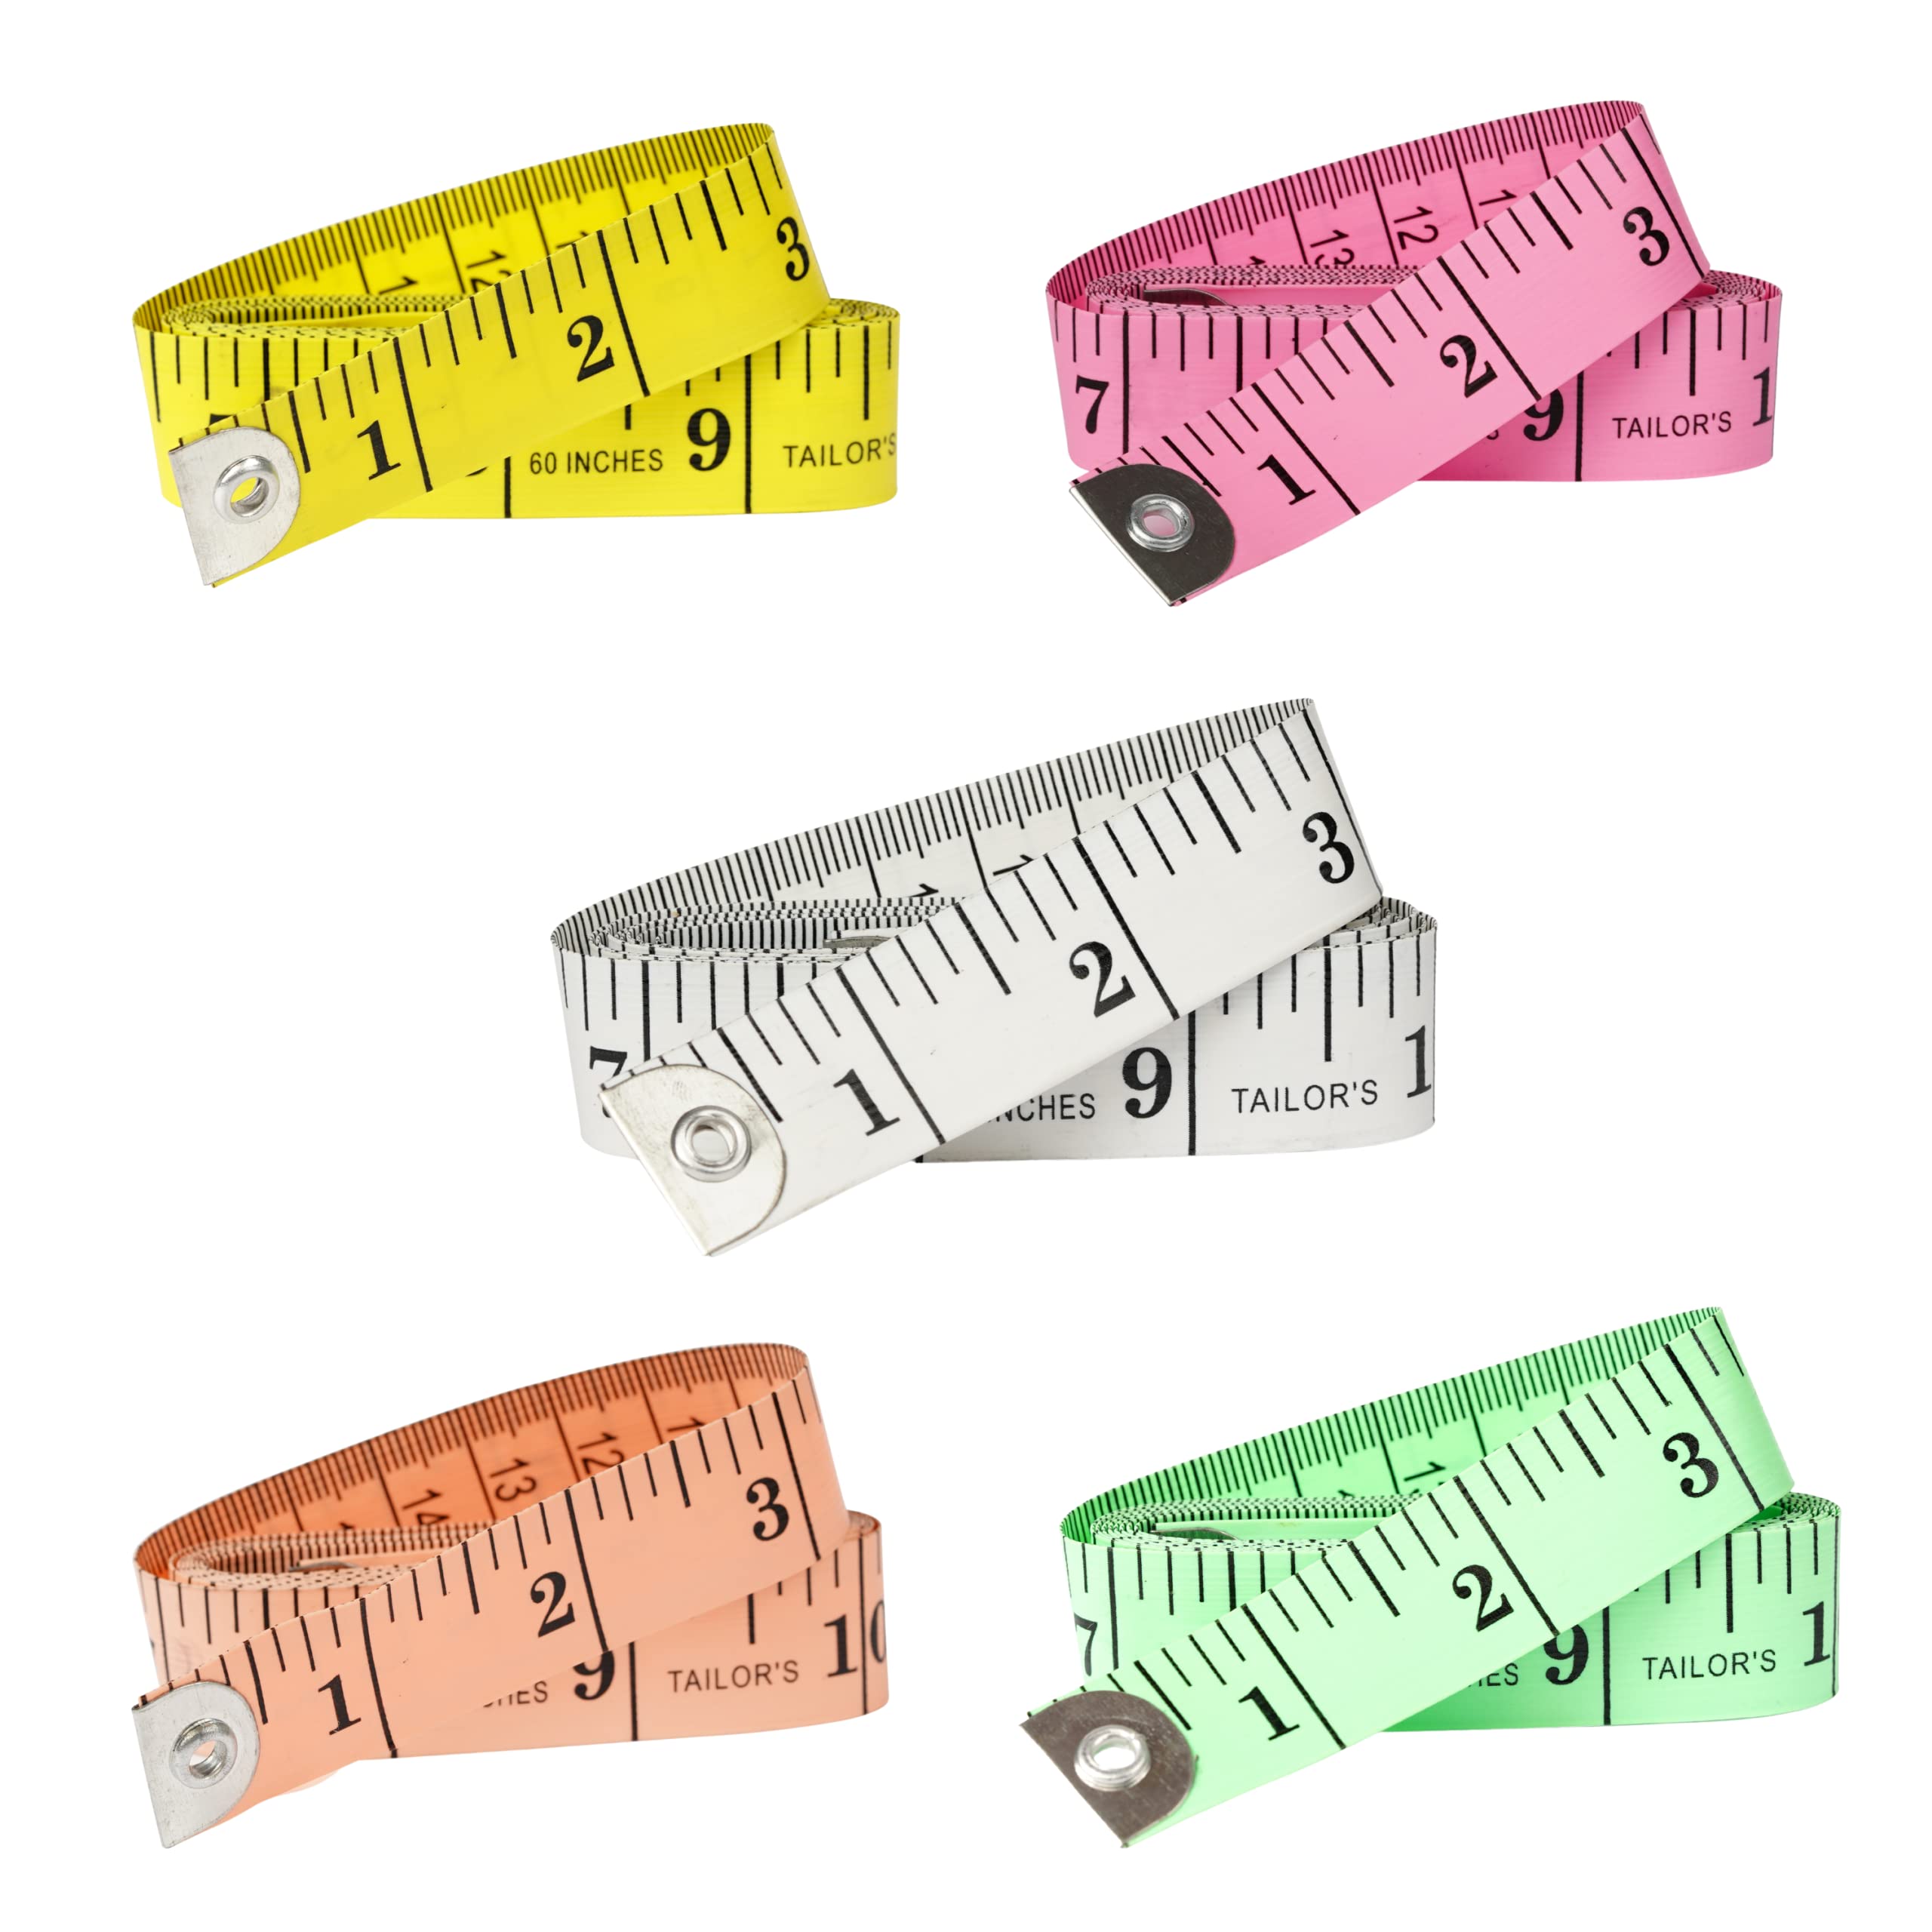 Tape Measure HANSMAYA 5-Pack Fiberglass Measuring Tape for Body